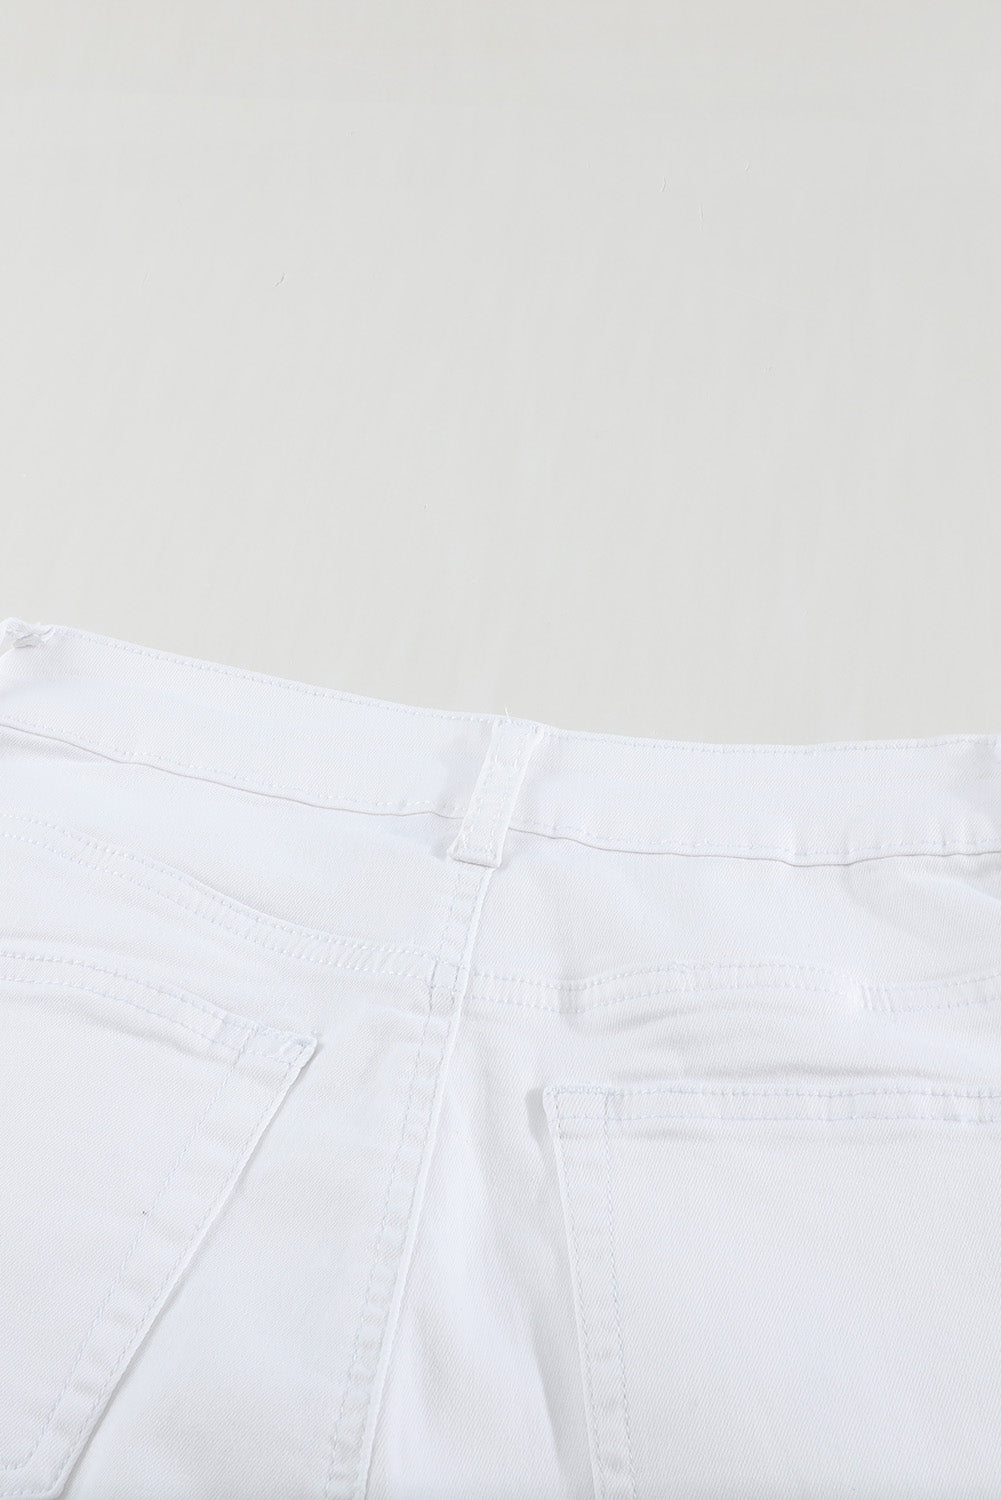 Jeans in denim corto sfilacciati con bottoni a vita alta bianchi semplici